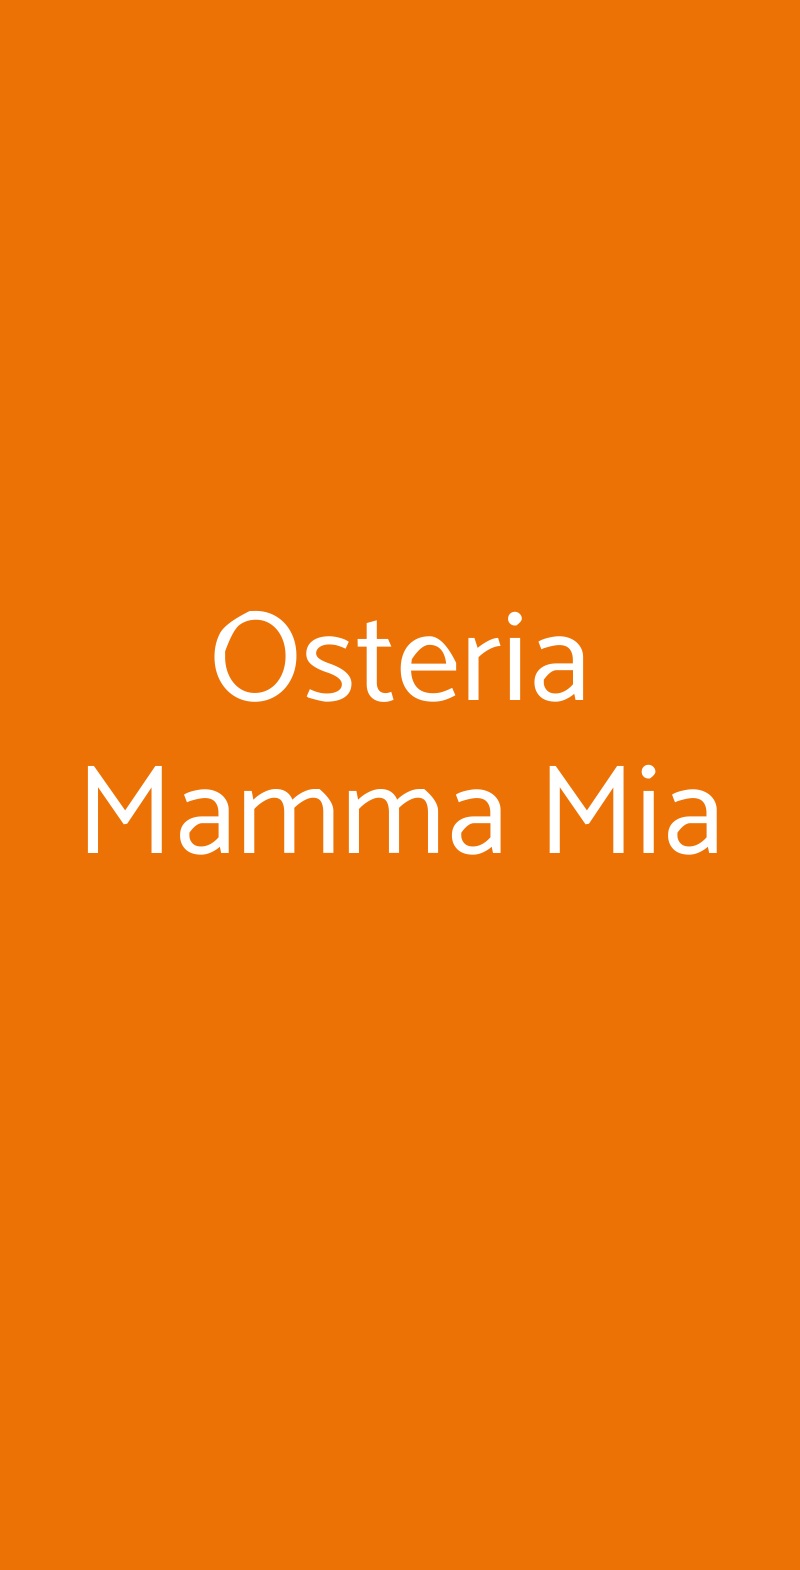 Osteria Mamma Mia Roma menù 1 pagina